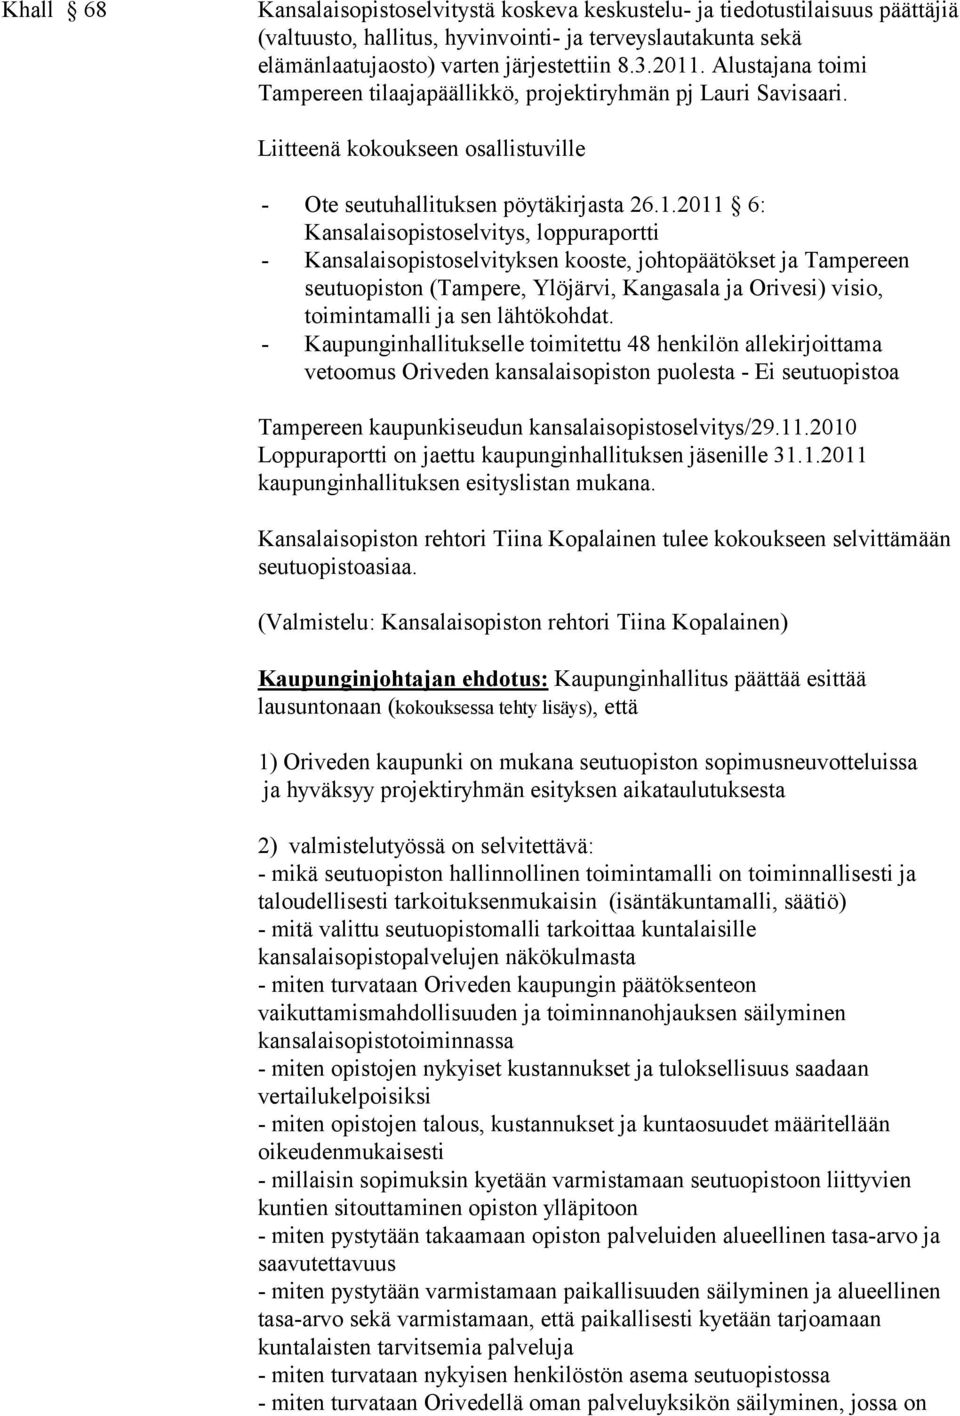 2011 6: Kansalaisopistoselvitys, loppuraportti - Kansalaisopistoselvityksen kooste, johtopäätökset ja Tampereen seutuopiston (Tampere, Ylöjärvi, Kangasala ja Orivesi) visio, toimintamalli ja sen